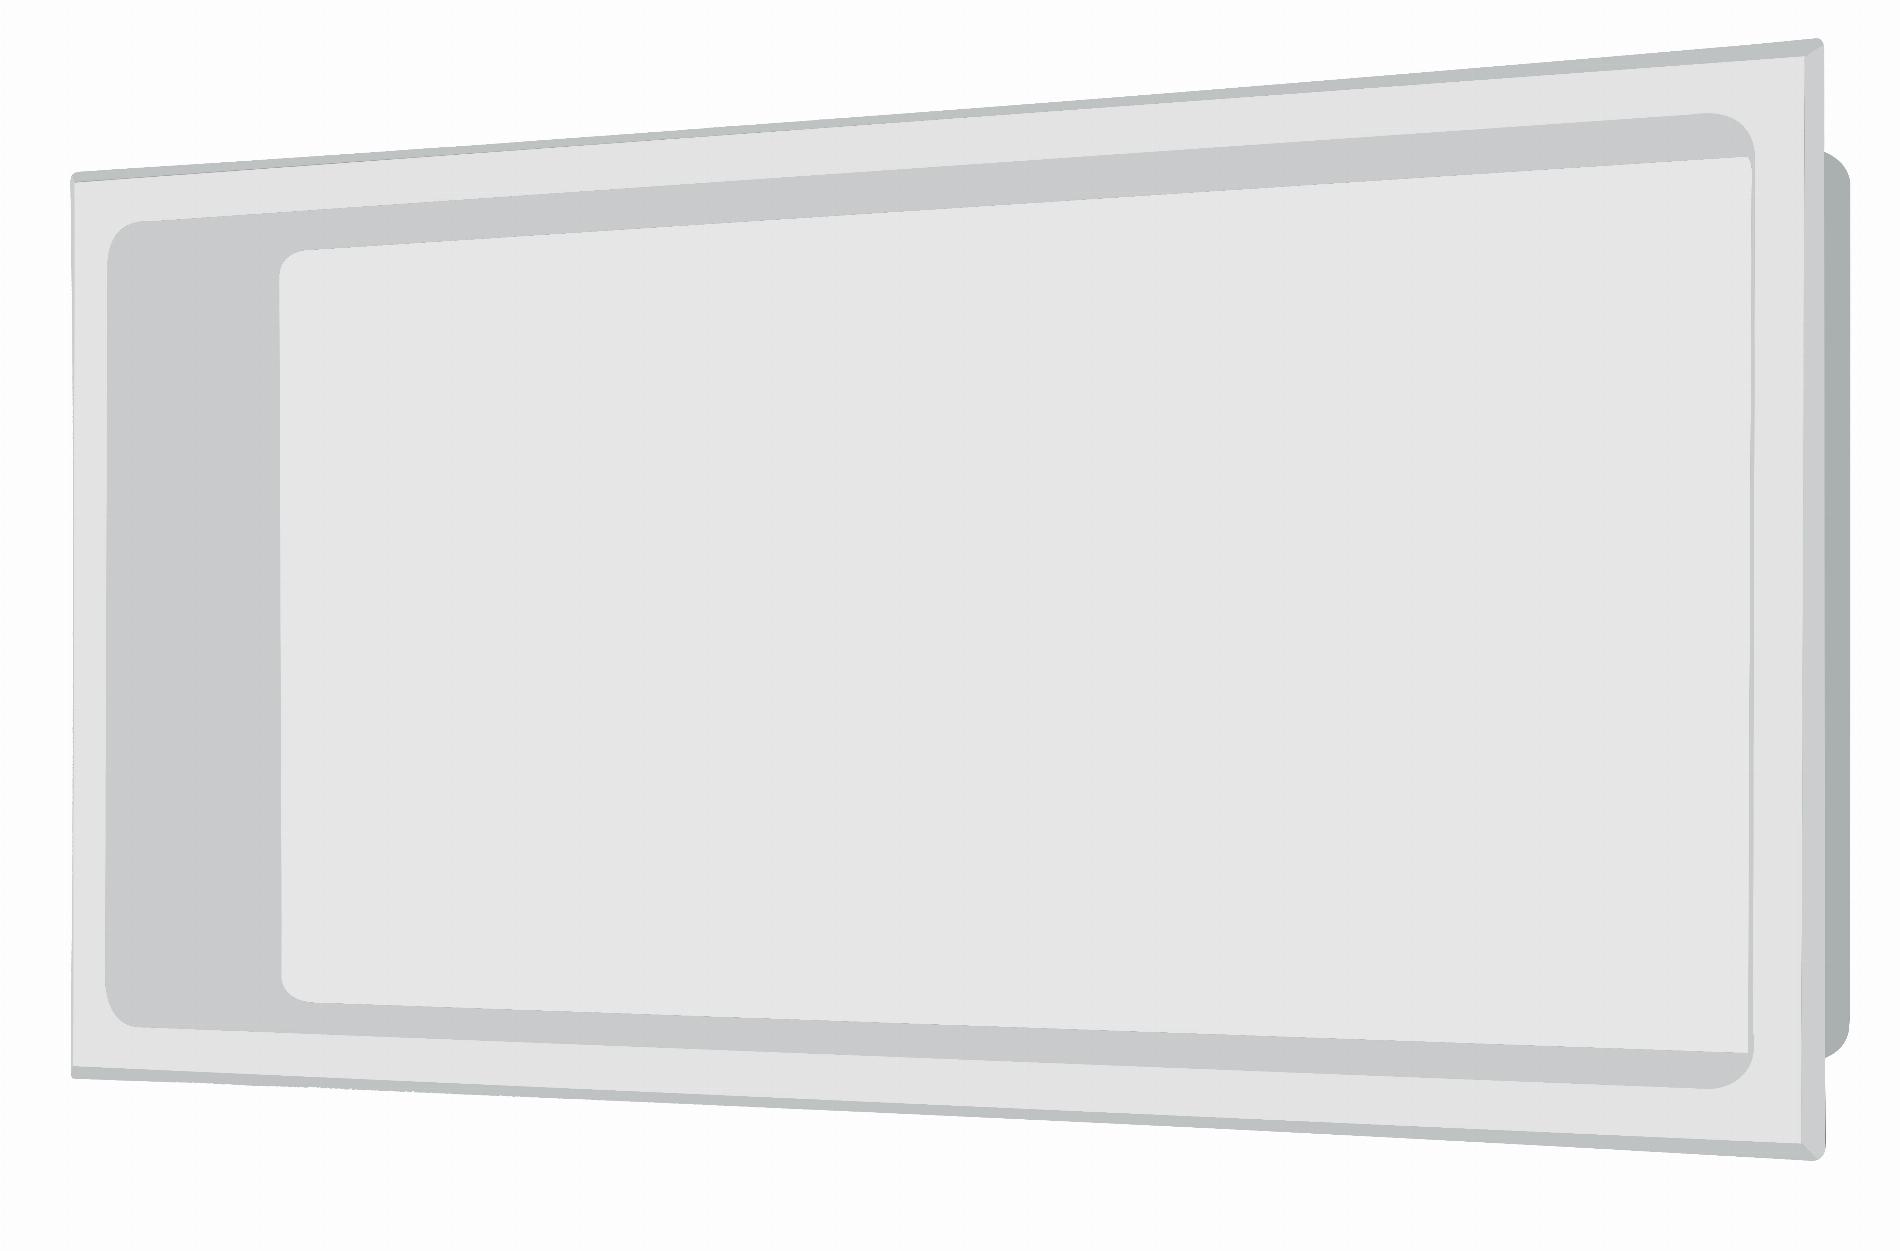 Edelstahl Wandnische in 30 x 60 cm